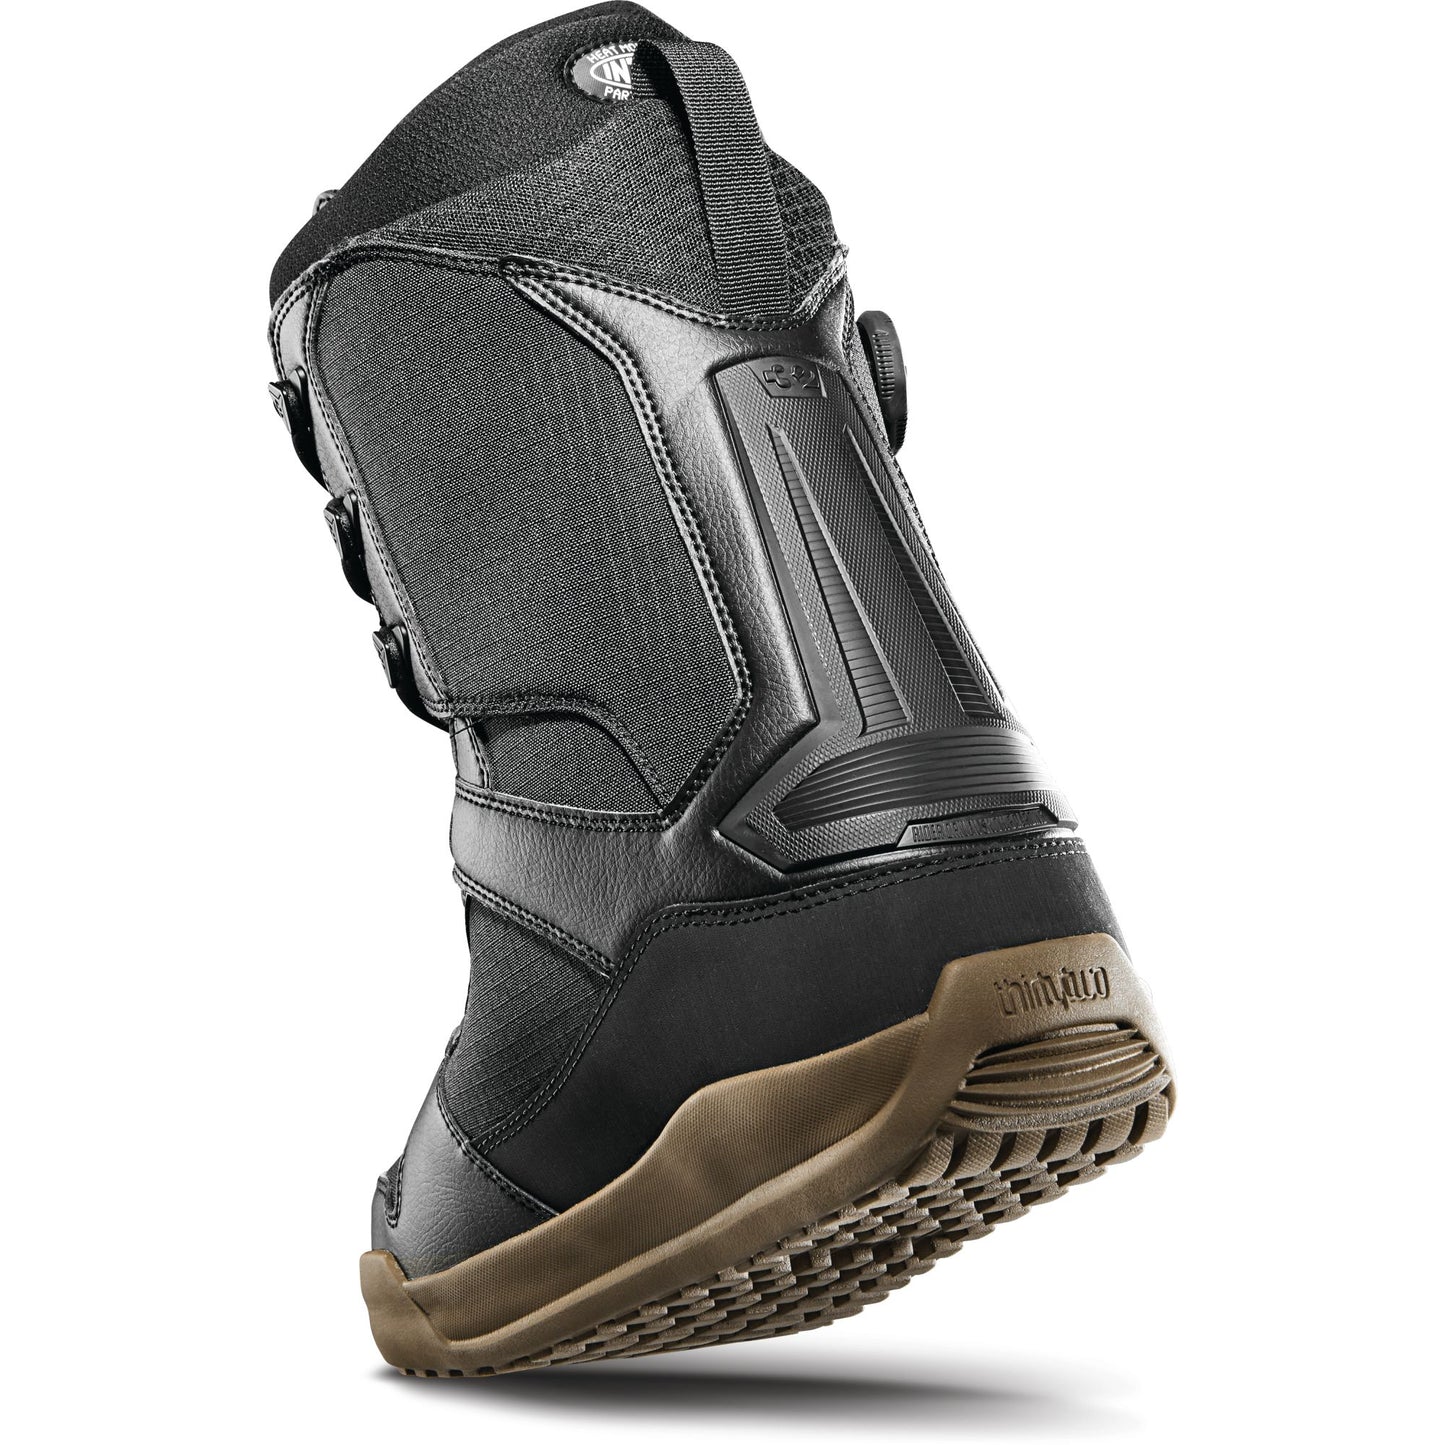 ThirtyTwo Diesel Hybrid Snowboard Boots Black/Gum Snowboard Boots